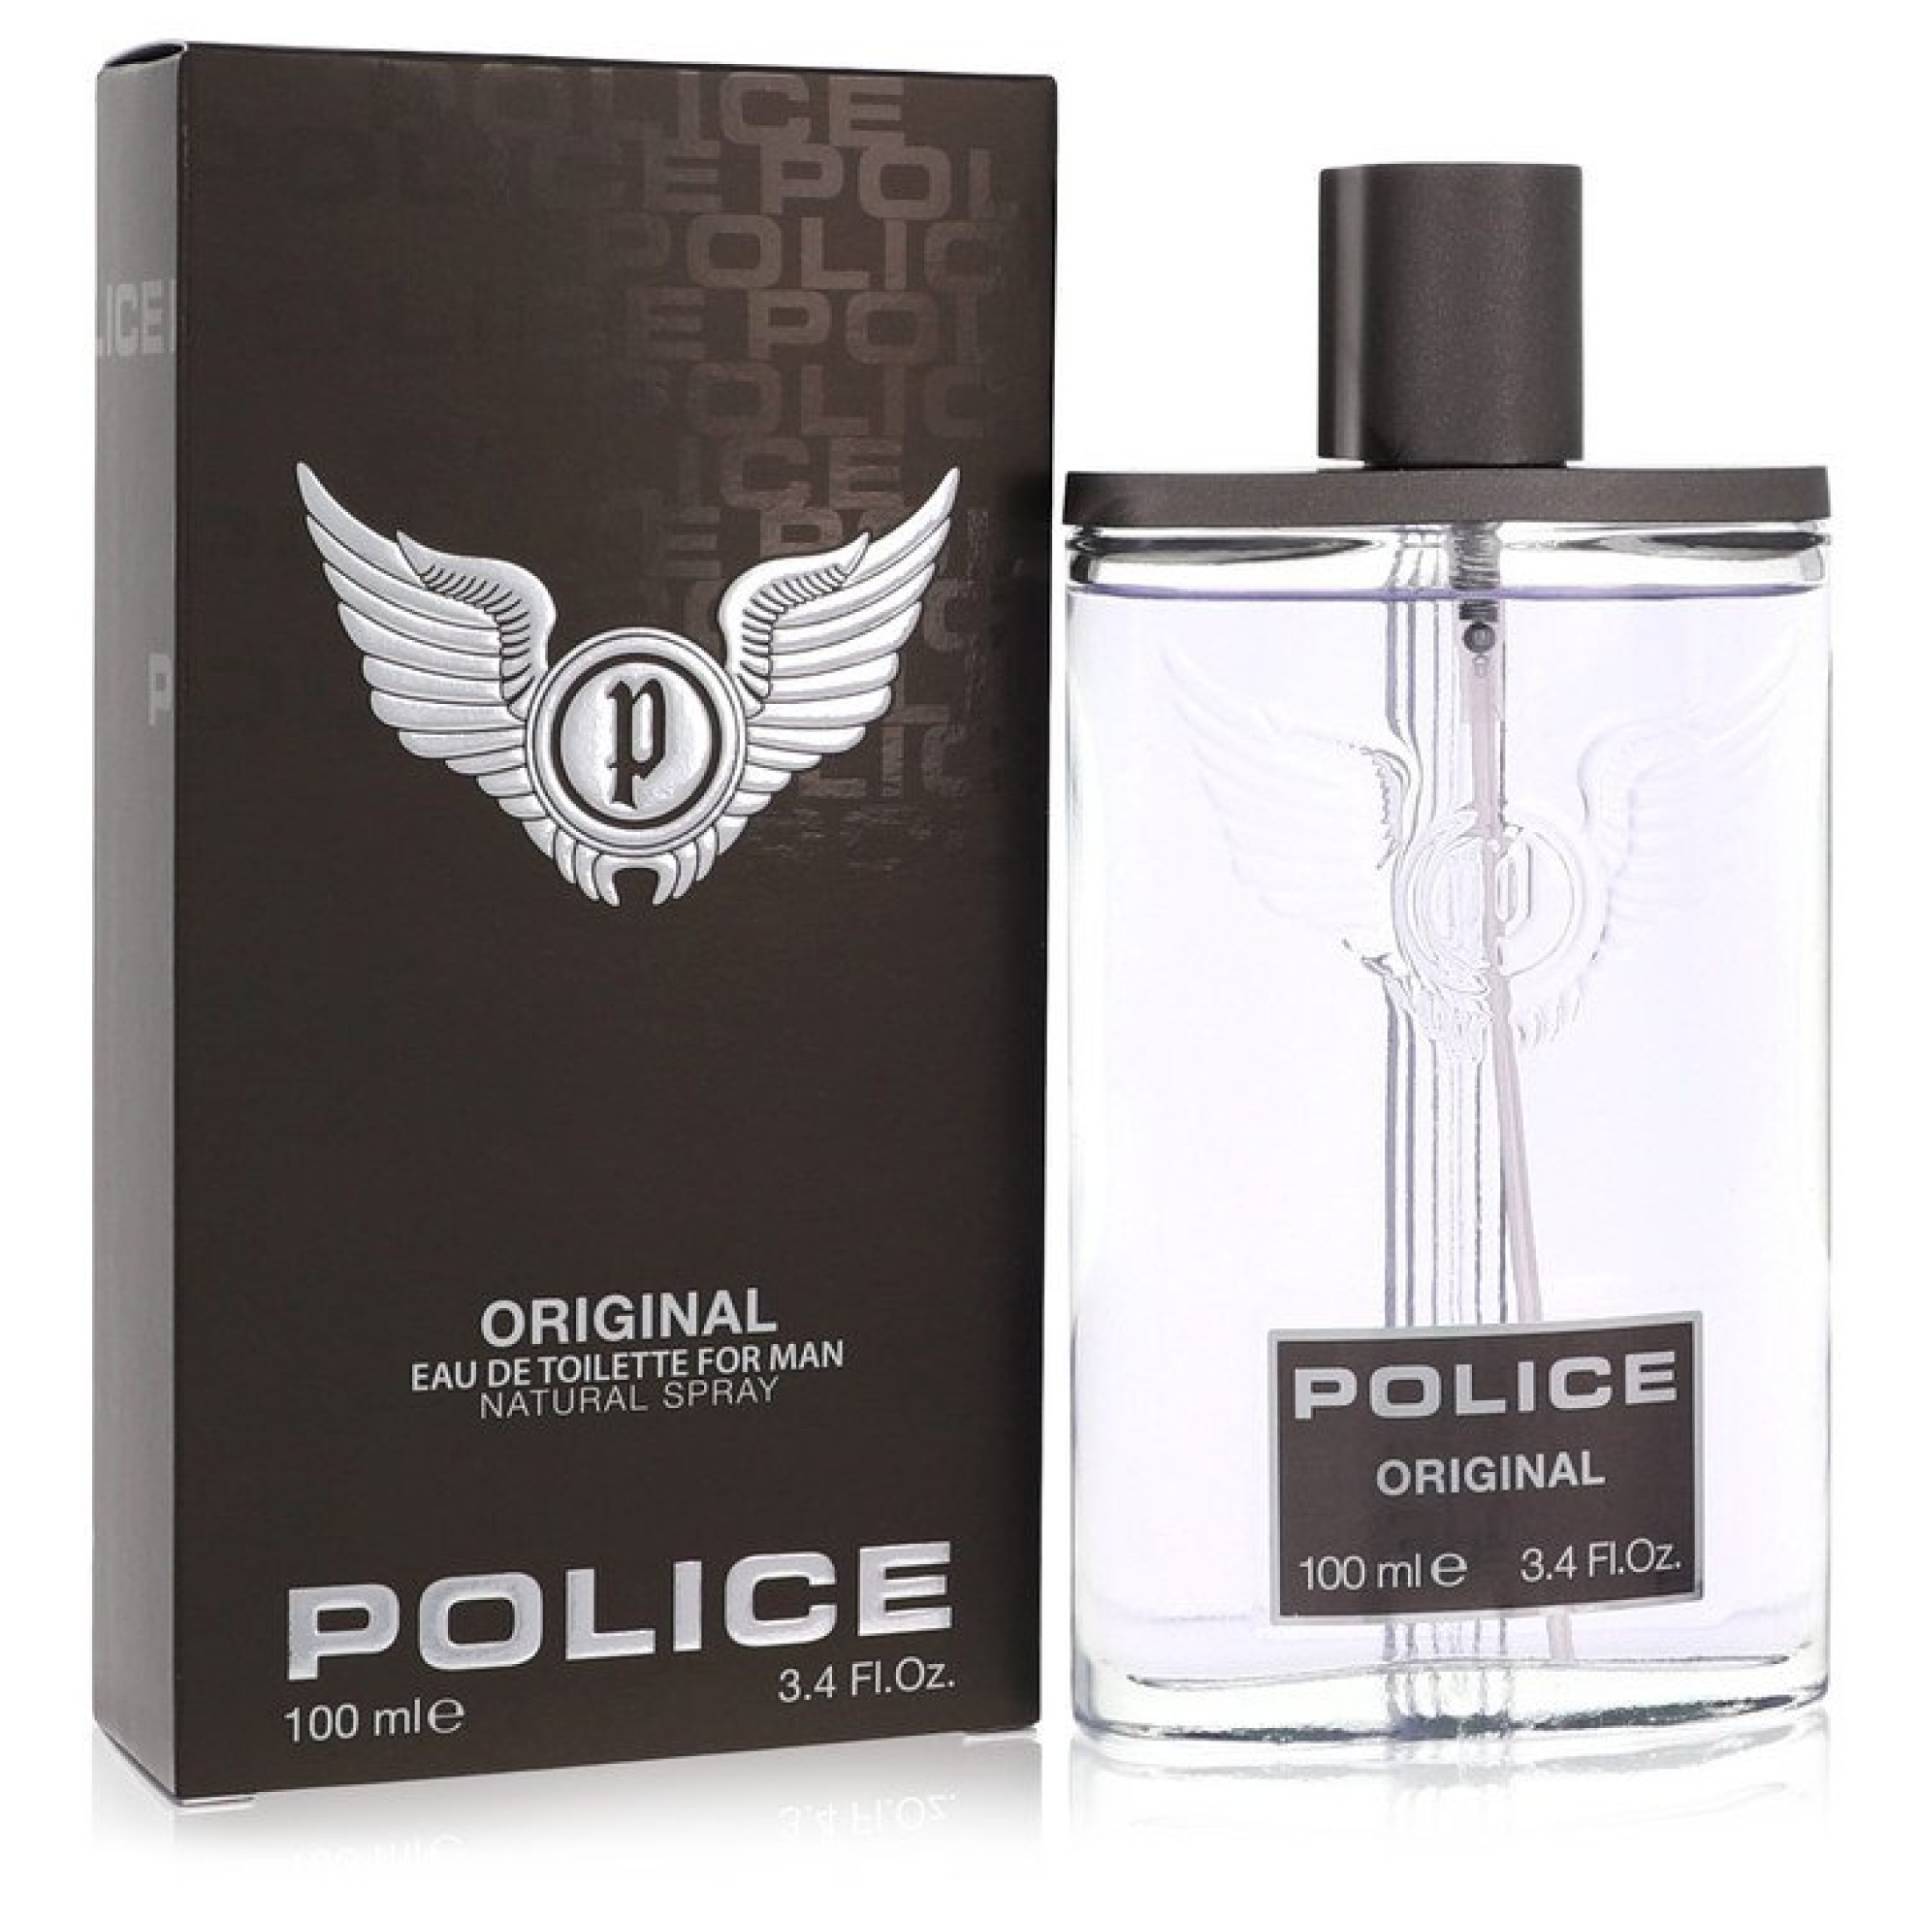 Police Colognes Police Original Eau De Toilette Spray 100 ml von Police Colognes